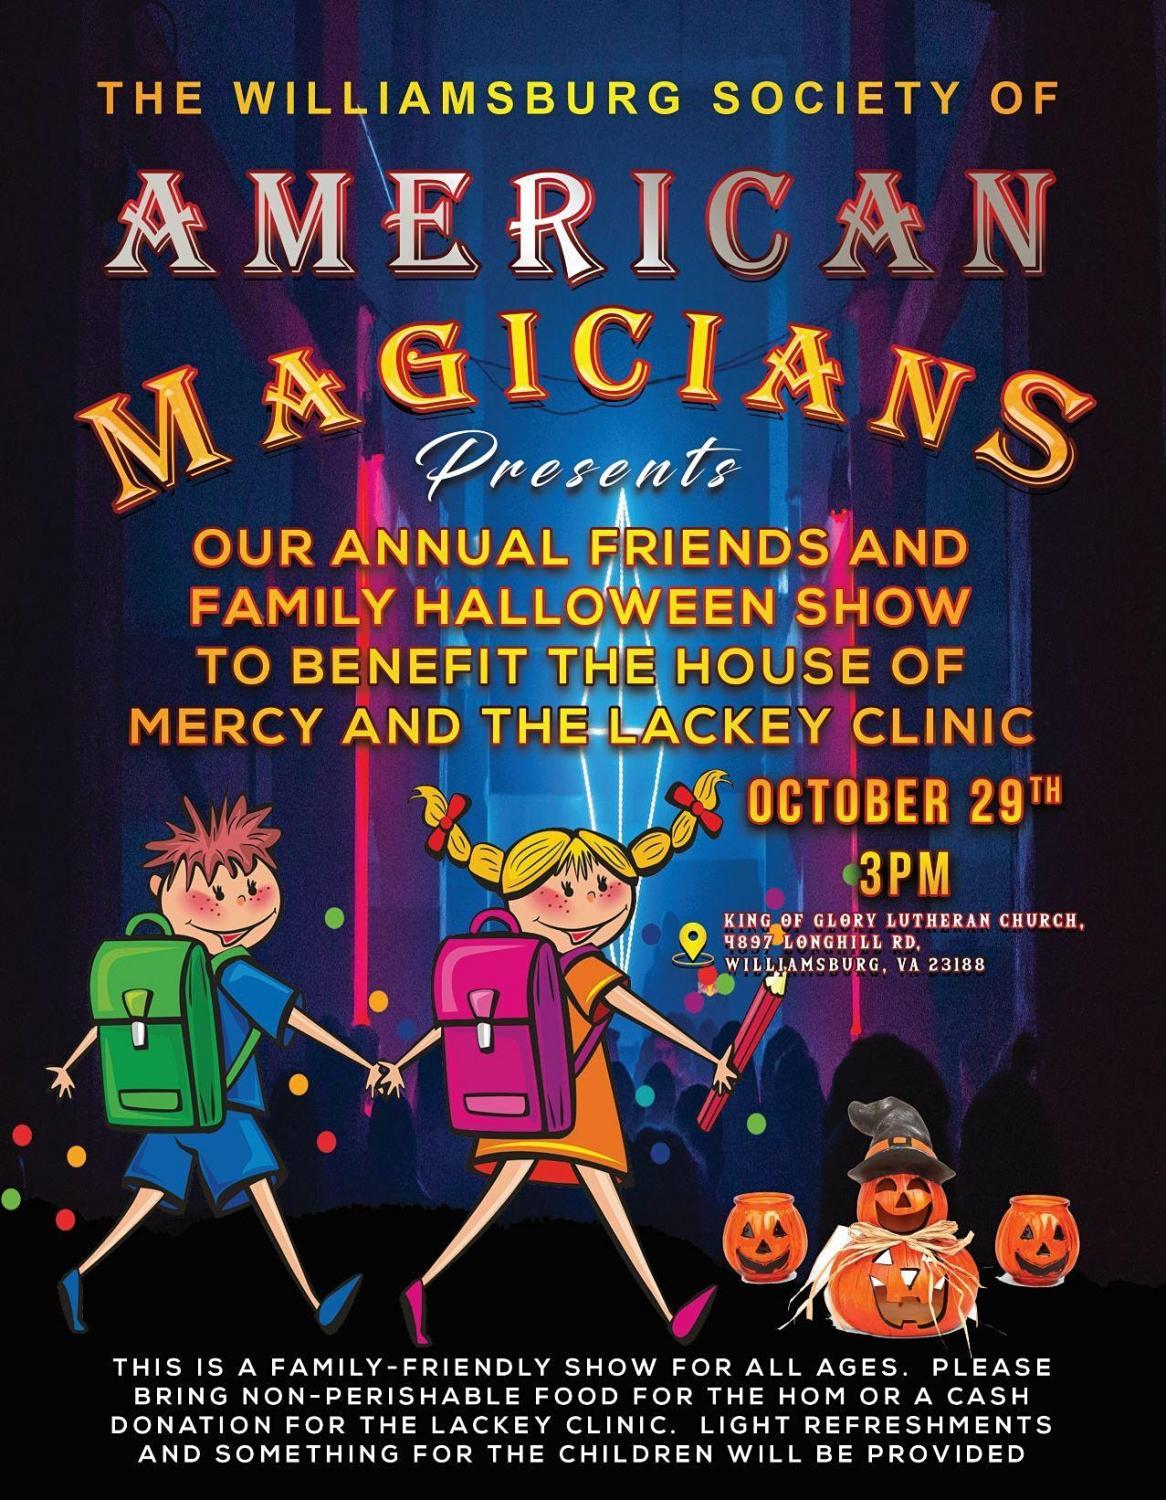 Halloween Magic Show in Williamsburg, VA
Sat Oct 29, 3:00 PM - Sat Oct 29, 4:30 PM
in 9 days